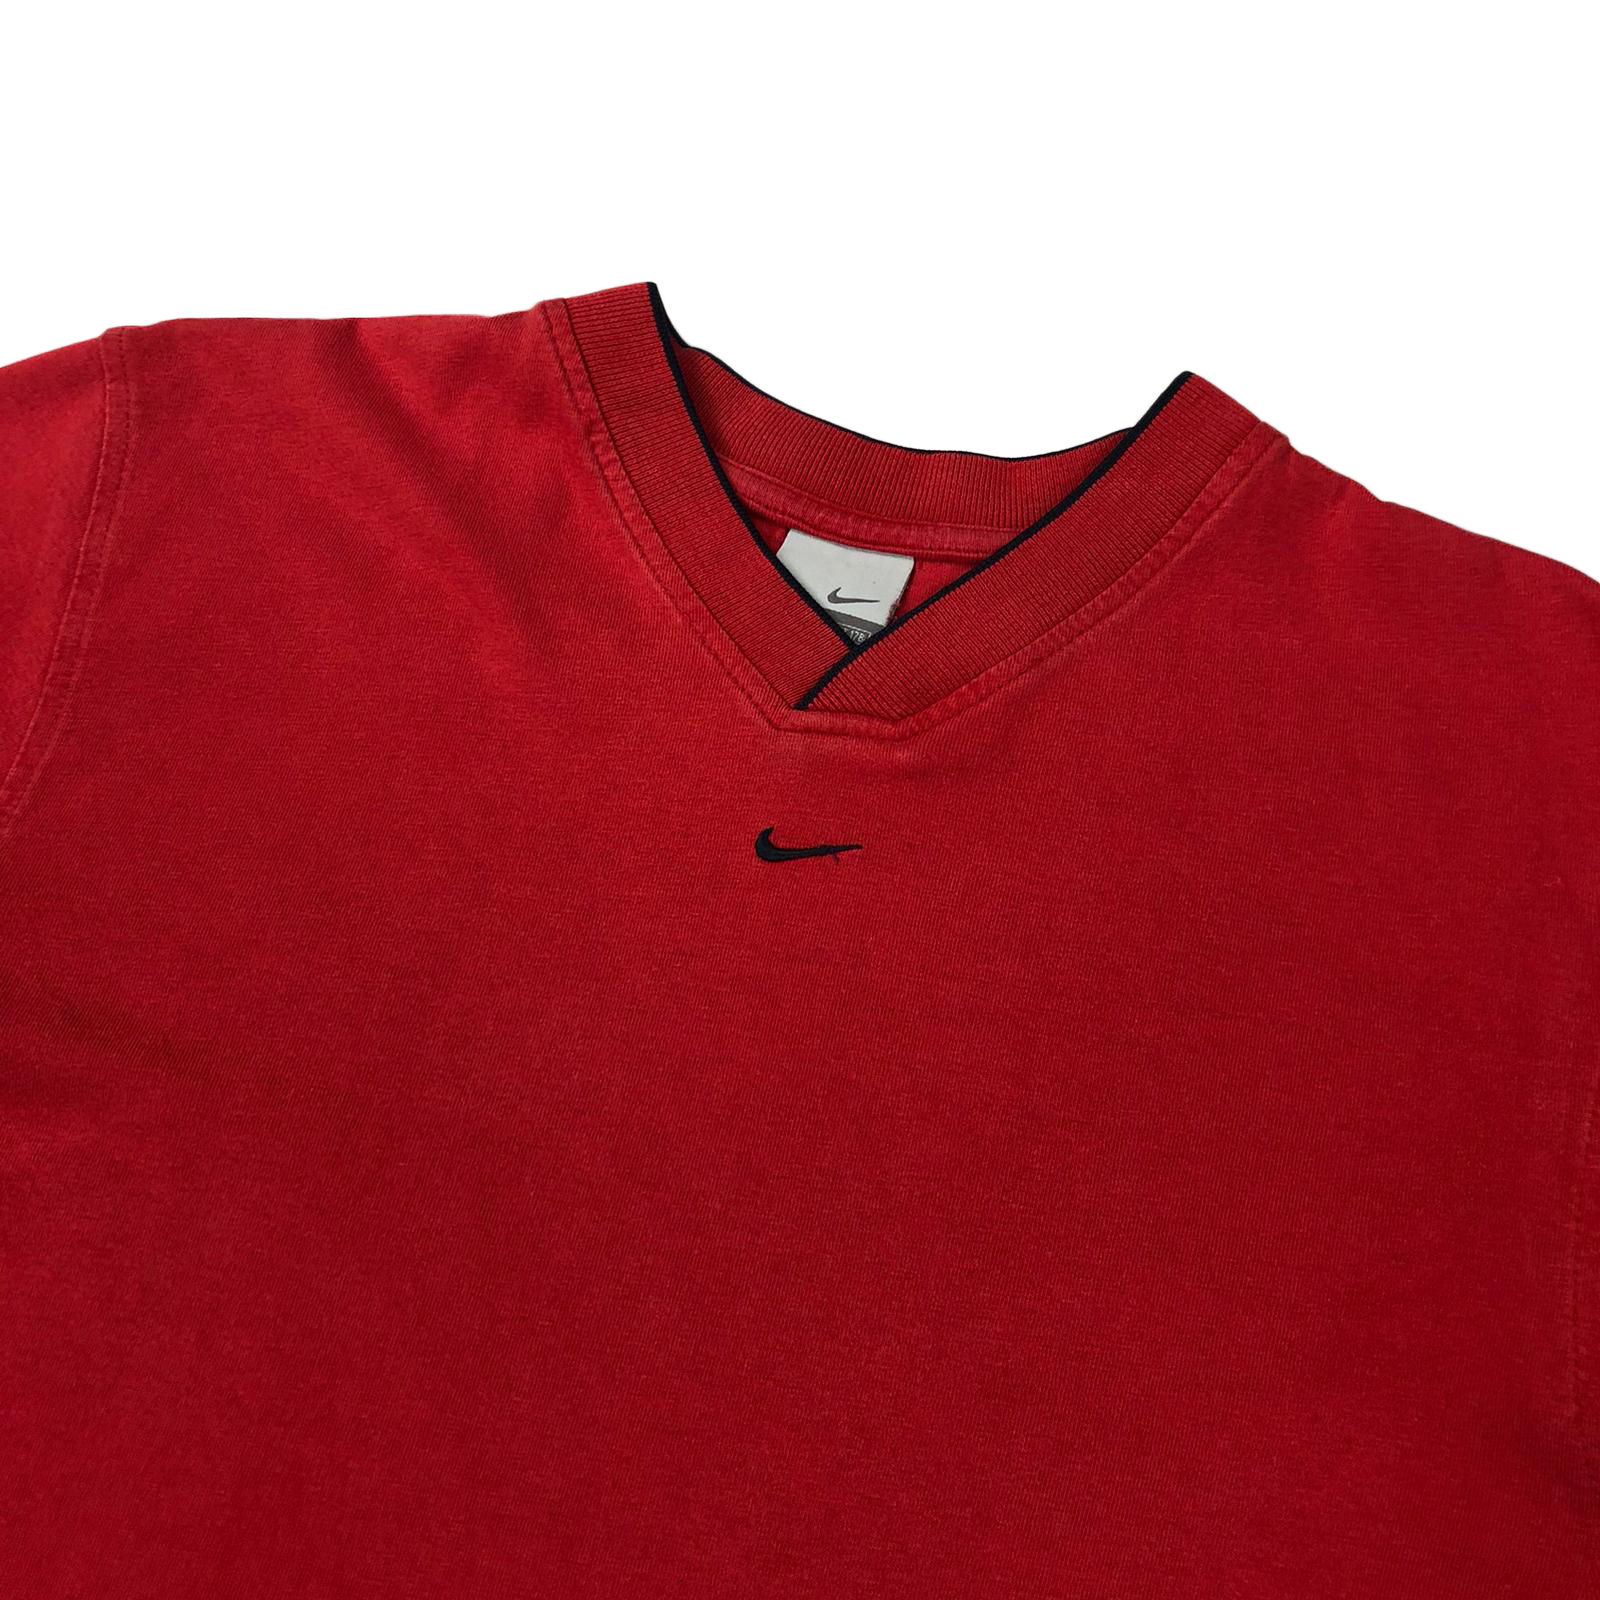 Nike centre swoosh t-shirt